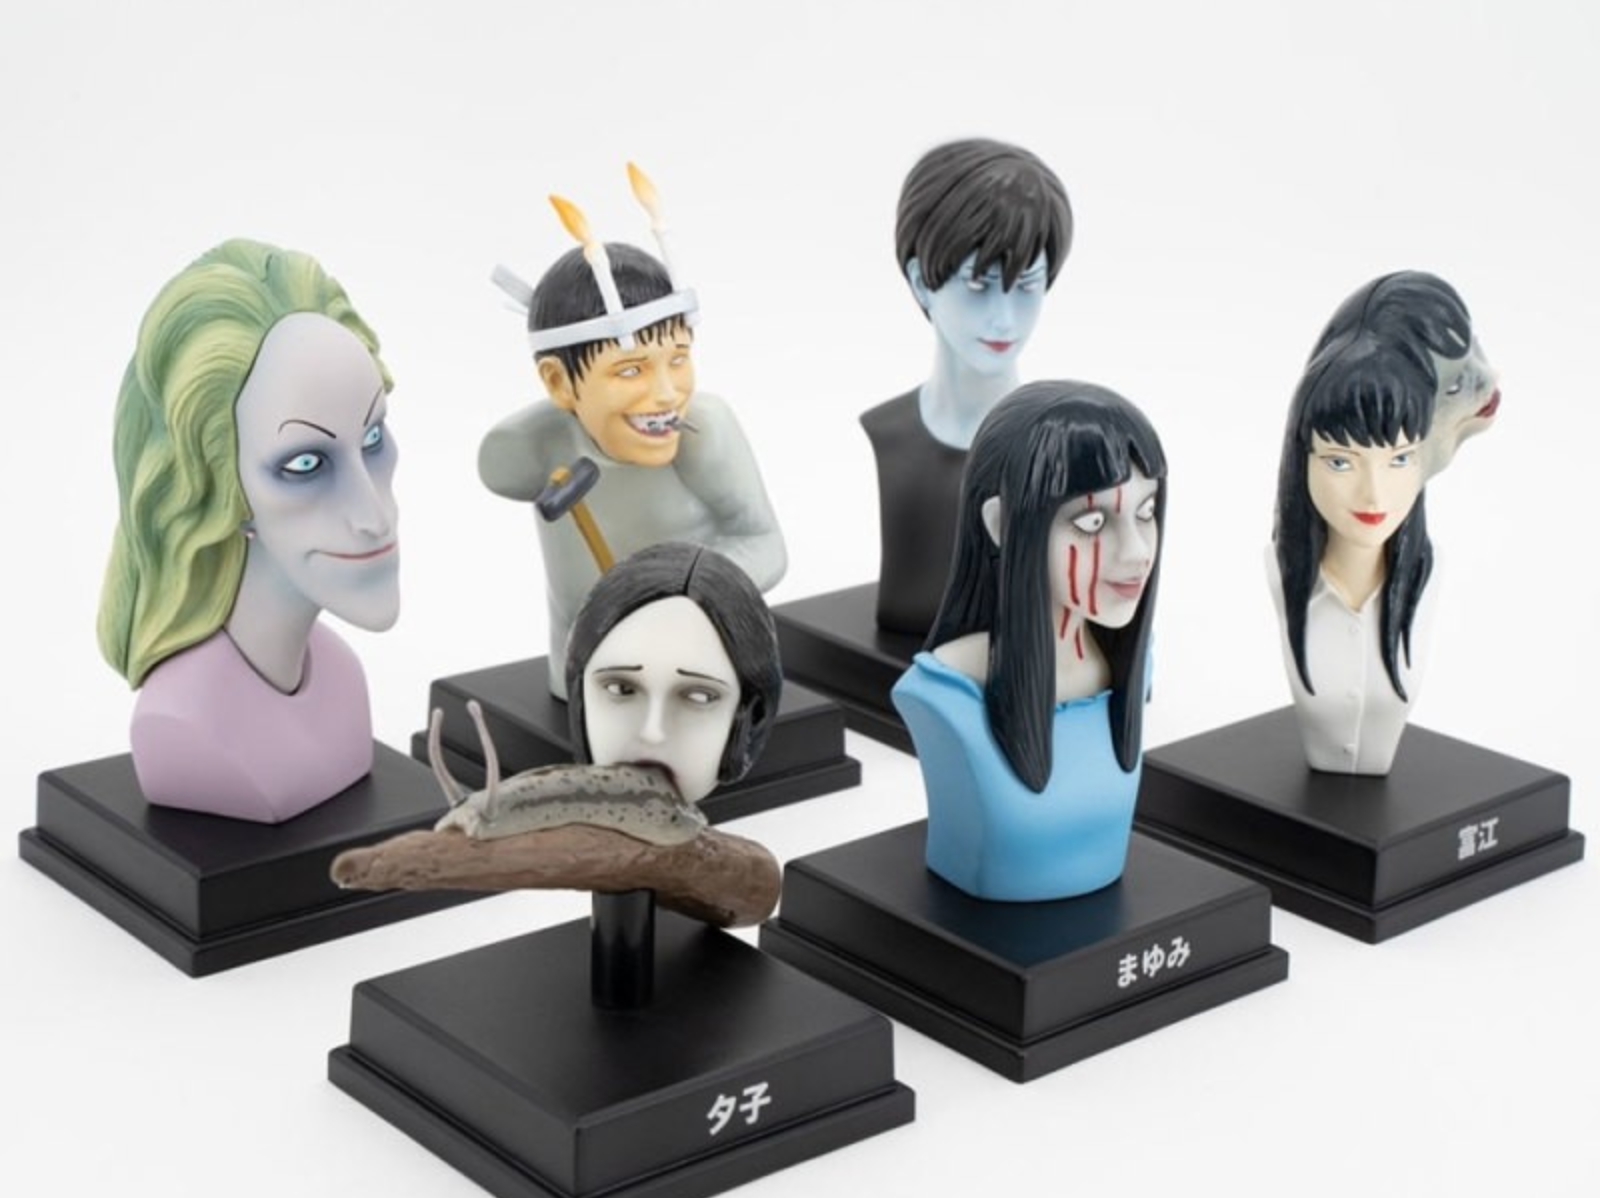 伊藤潤二 x Unbox Industries 推出全彩「怪奇箱」玩具，富江、蛞蝓女 6 種經典角色還原度超高！